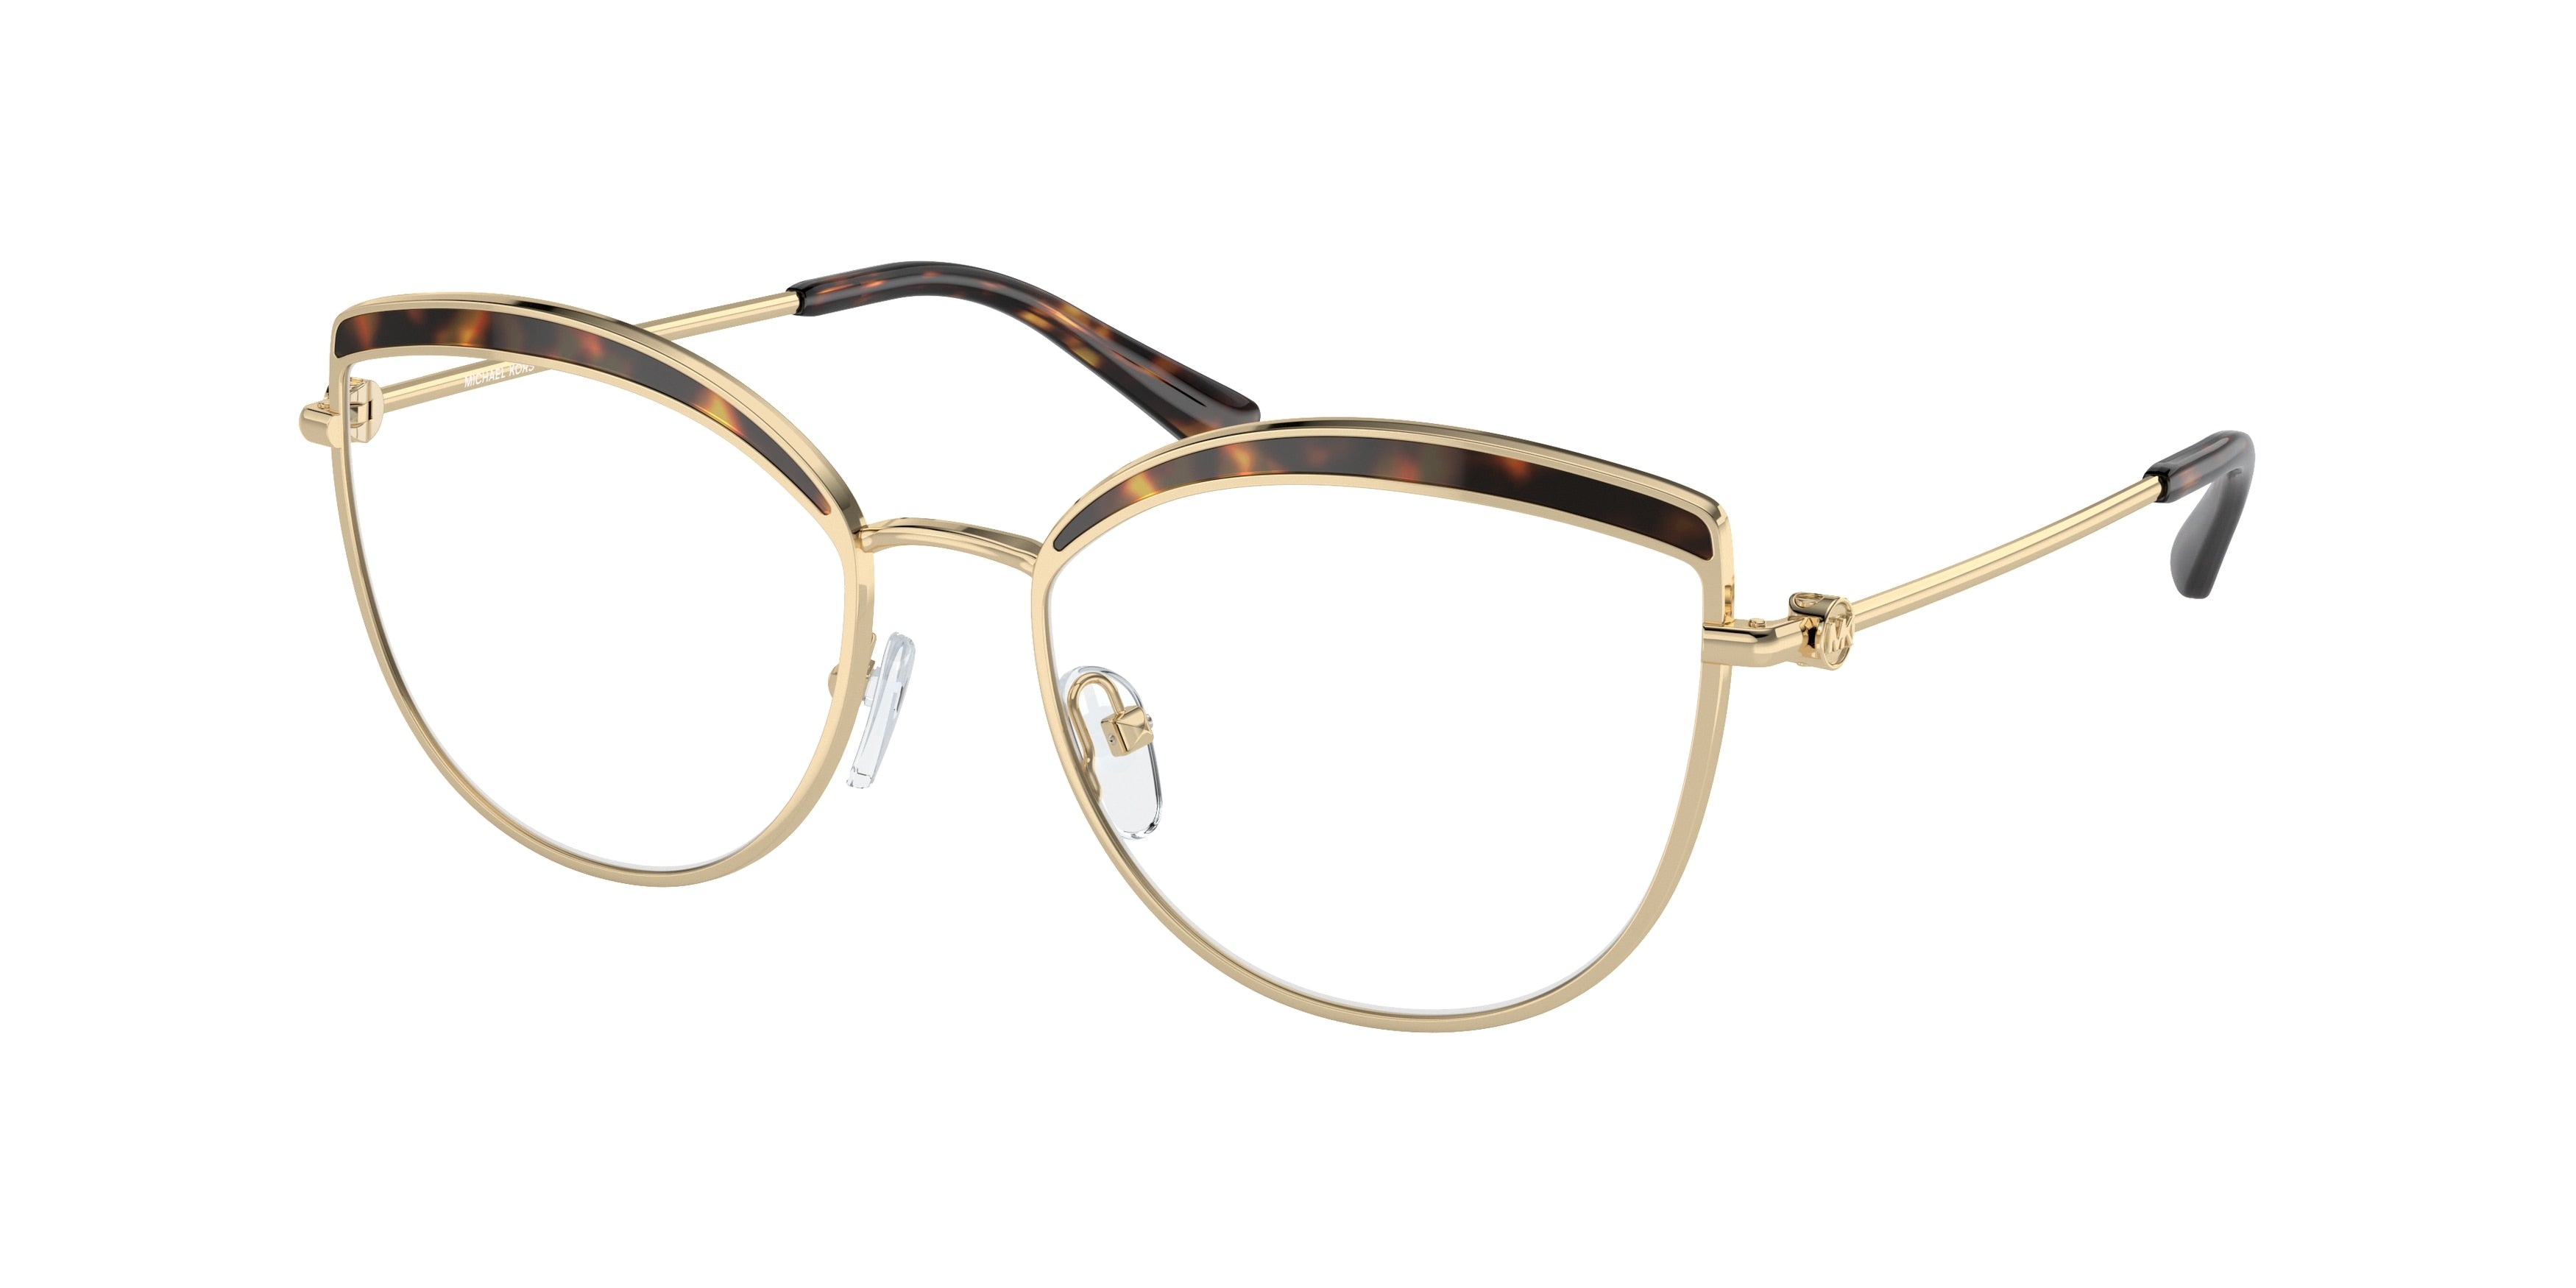 Michael Kors NAPIER MK3072 Cat Eye Eyeglasses  1016-Light Gold 54-140-17 - Color Map Gold